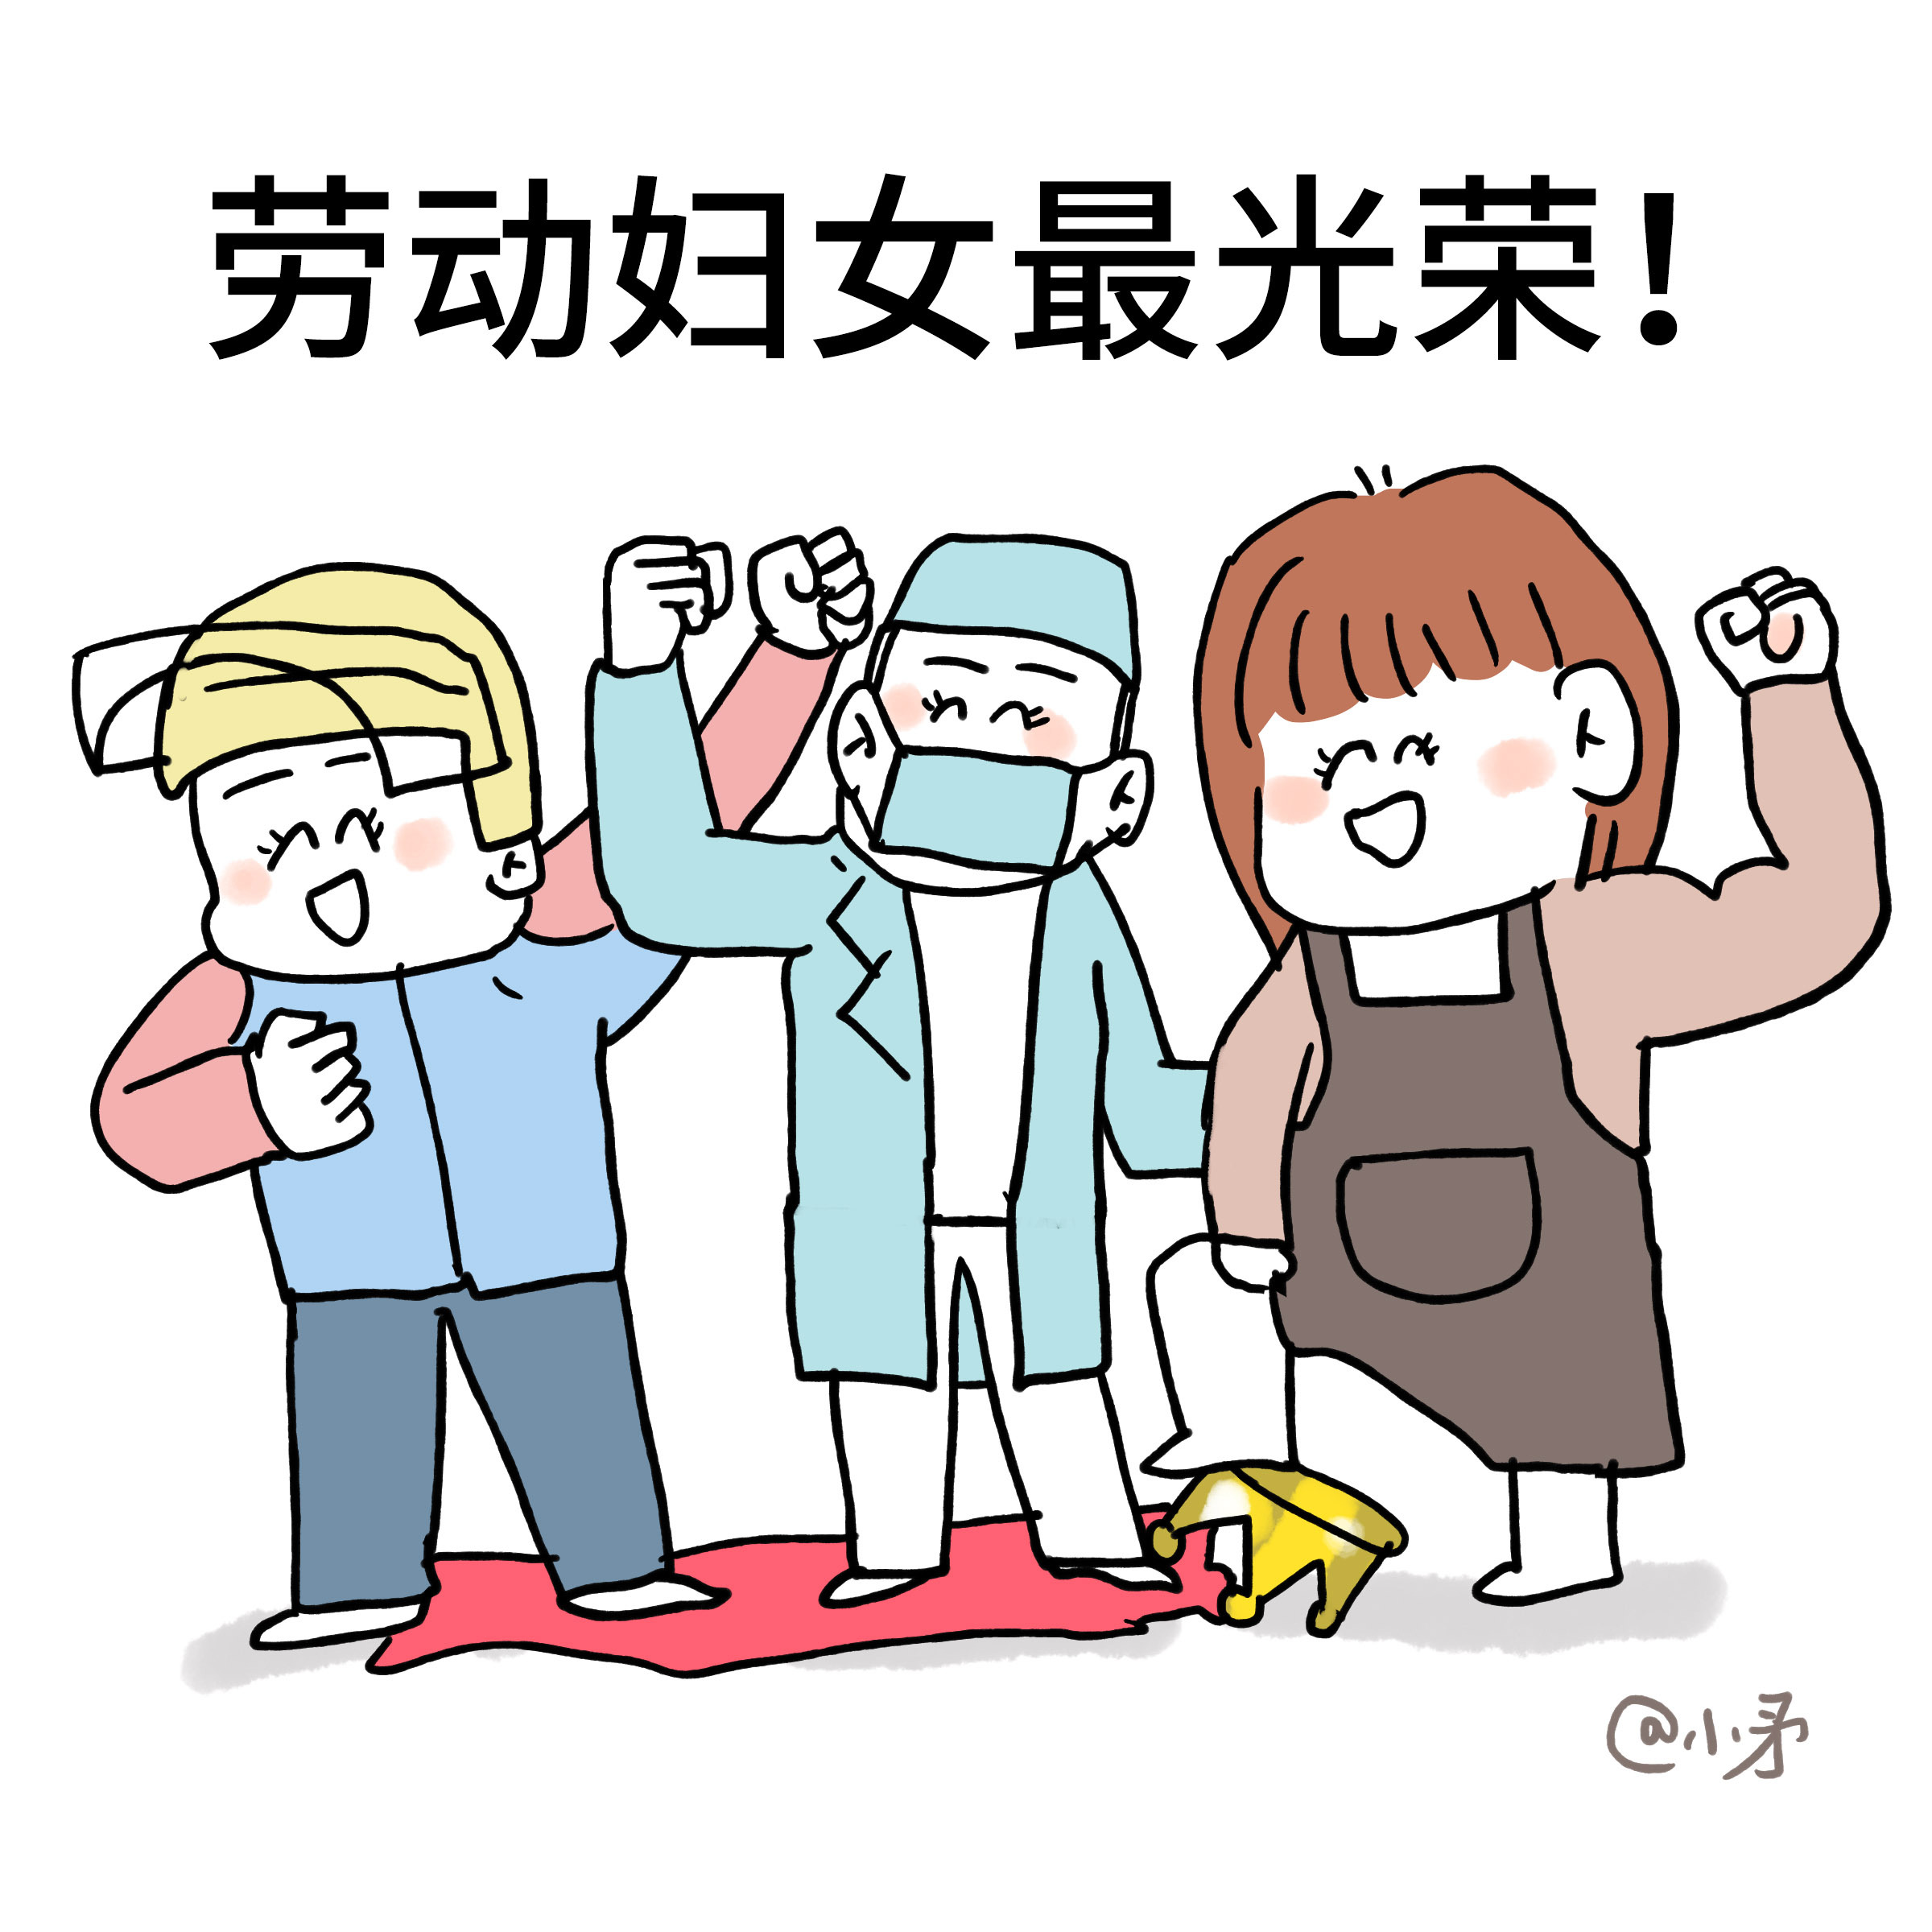 51劳动节劳动工人劳动光荣卡通插画图片-千库网